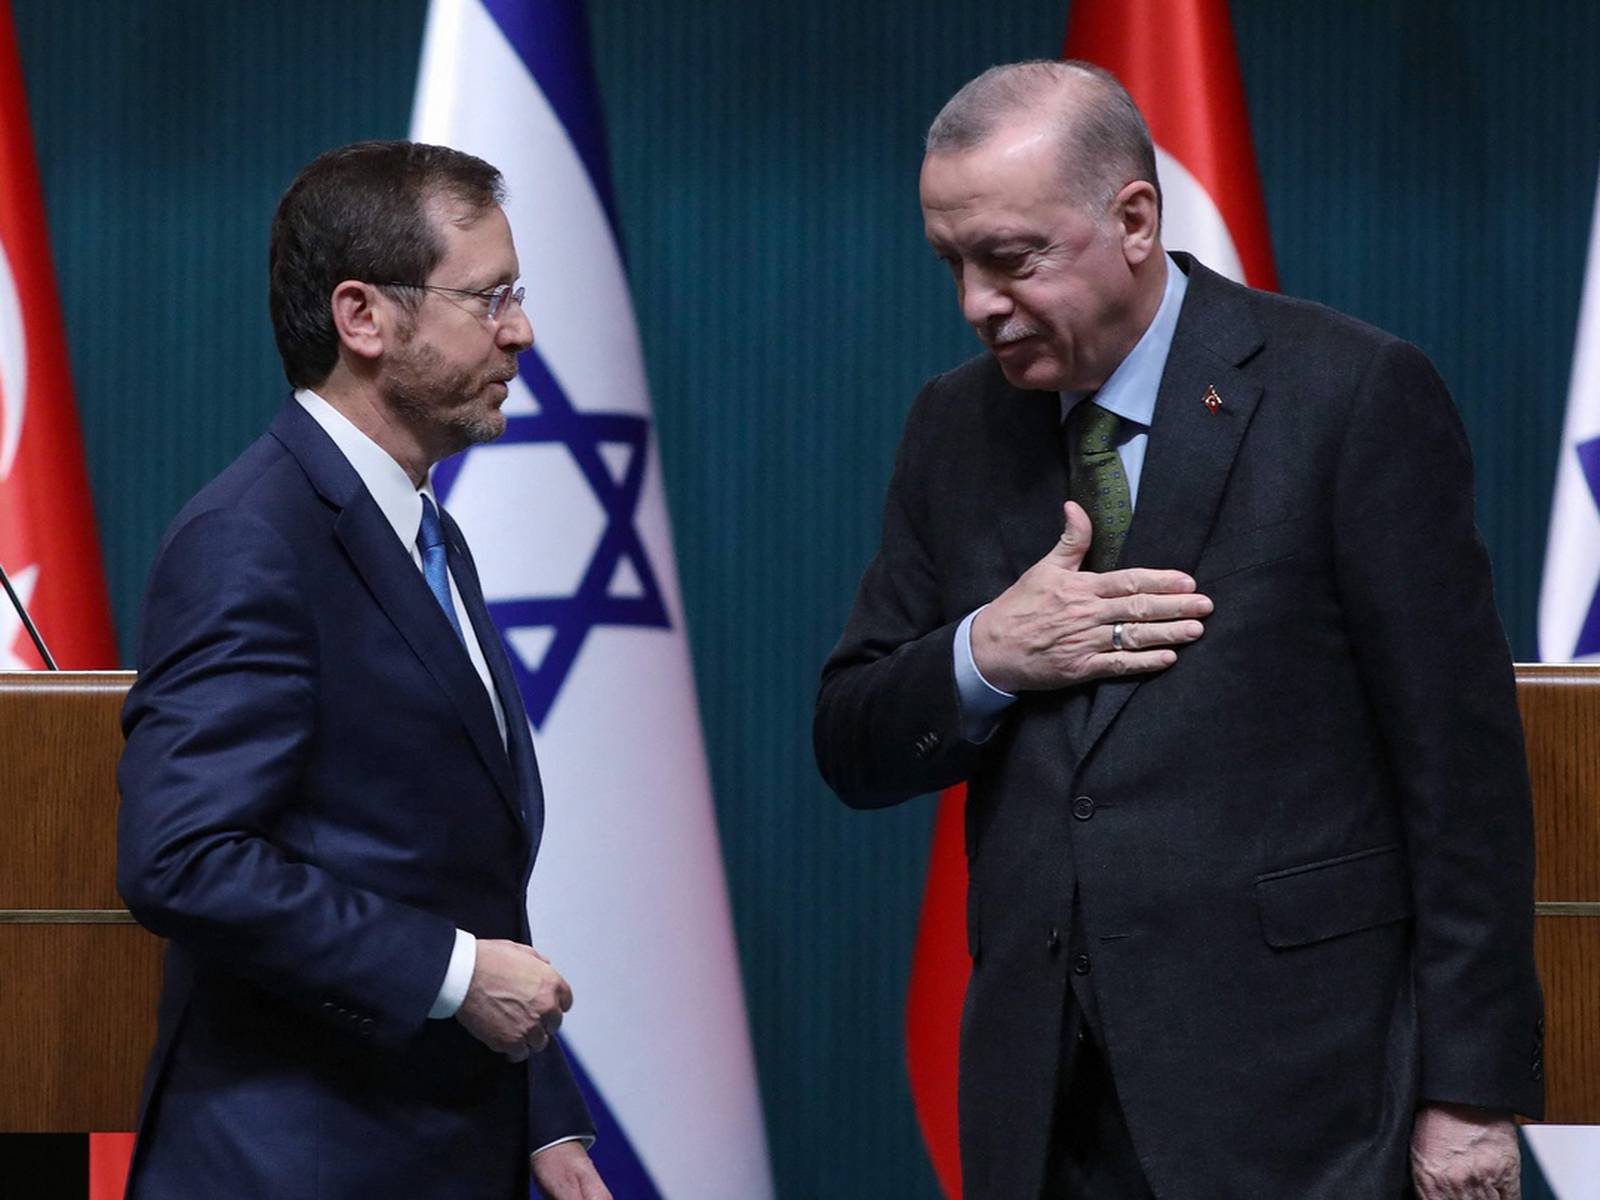 Ердоган заради вигоди дружить з єврейським утворенням